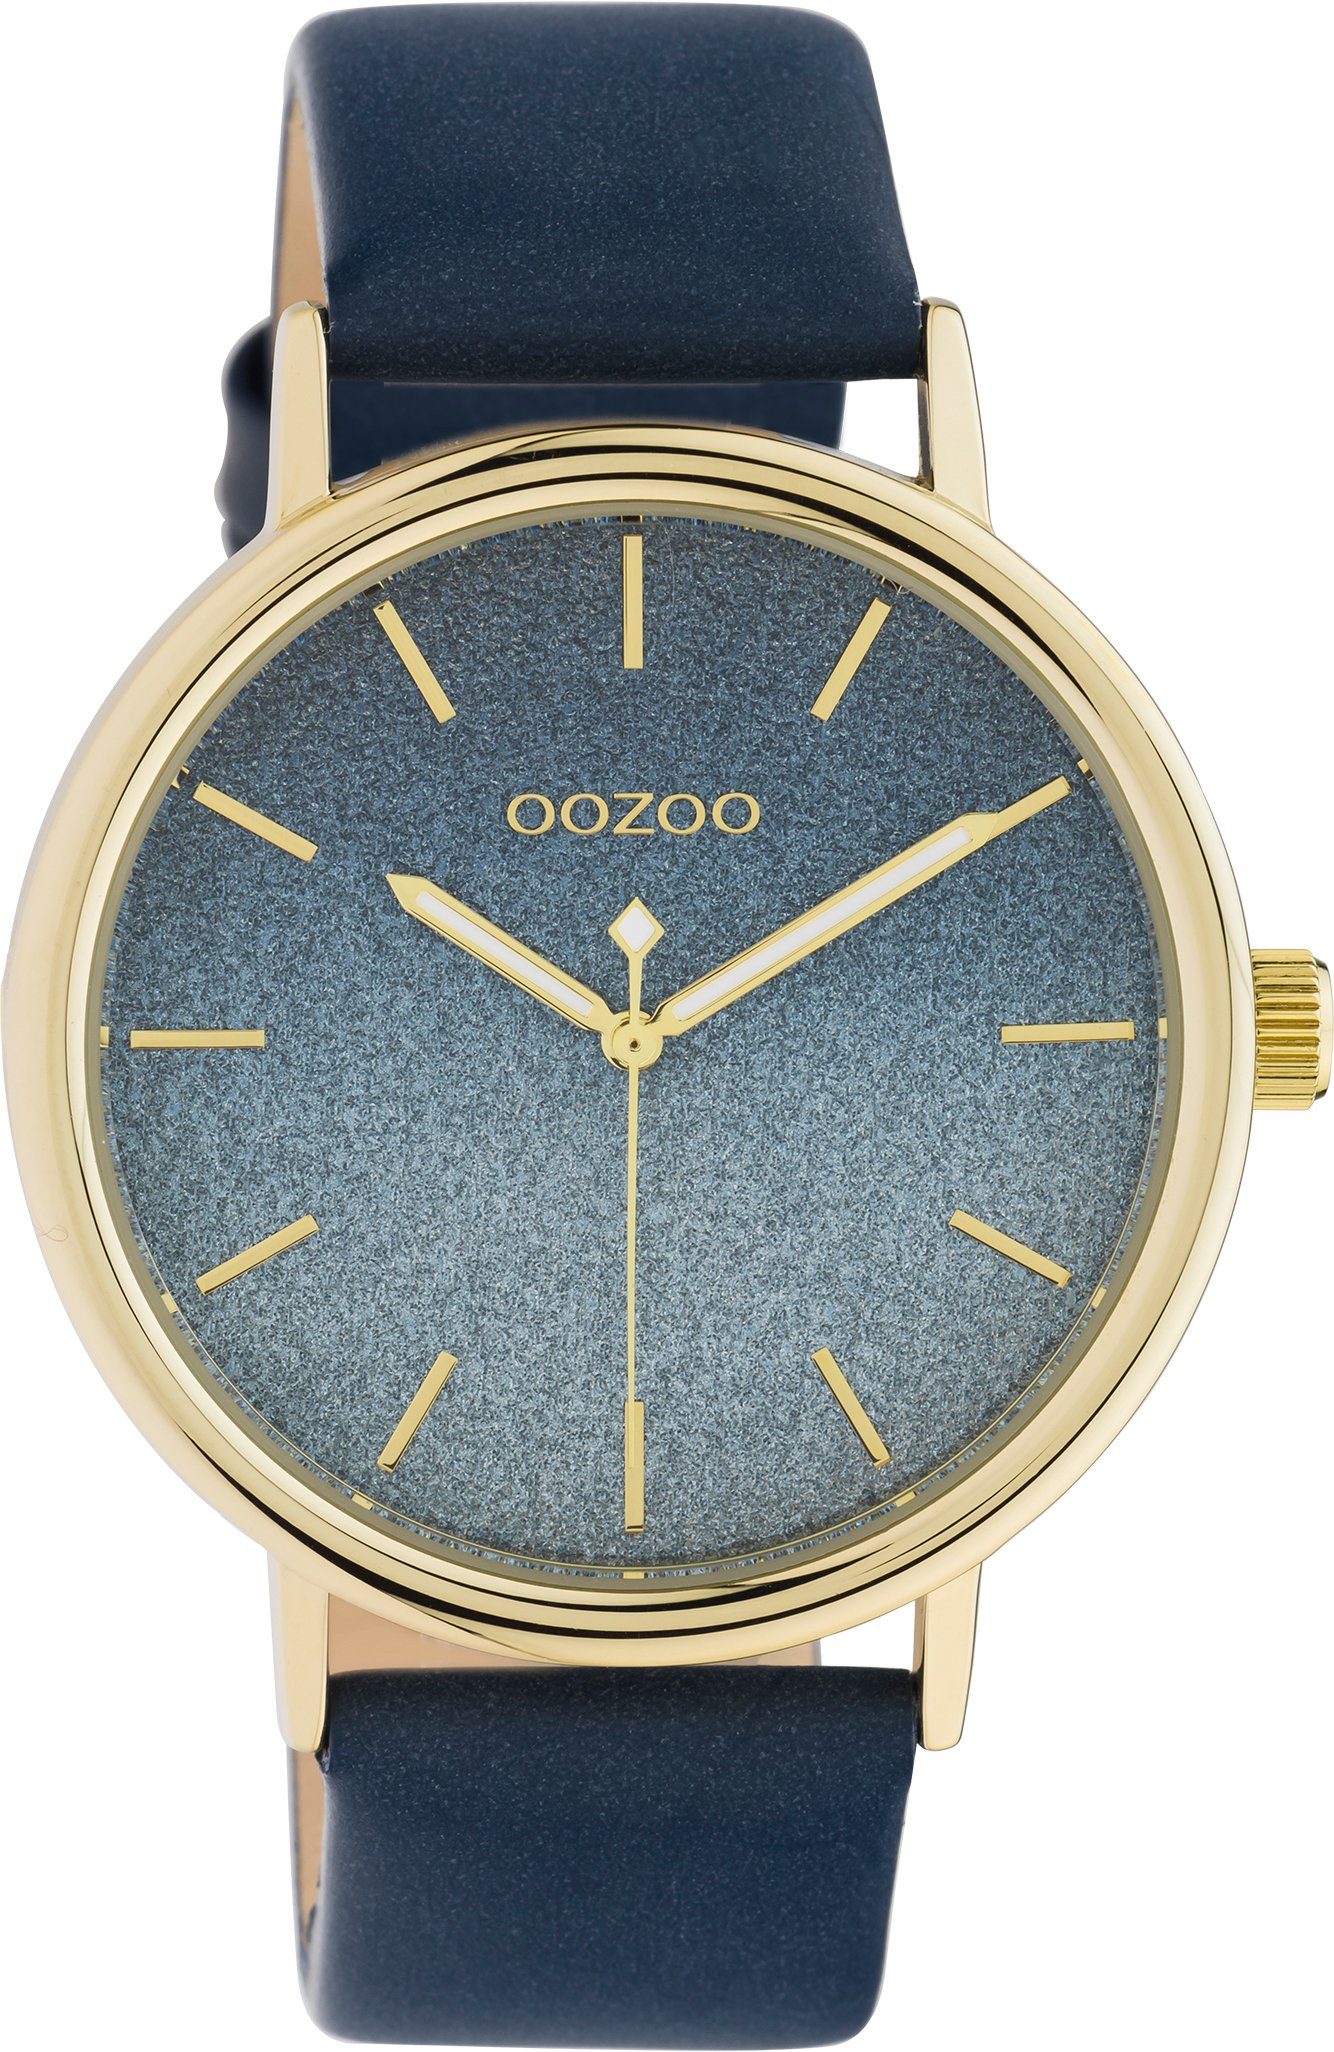 OOZOO Quarzuhr C10938, IP-beschichtet, ca. 42 mm Ø goldfarben Metallgehäuse